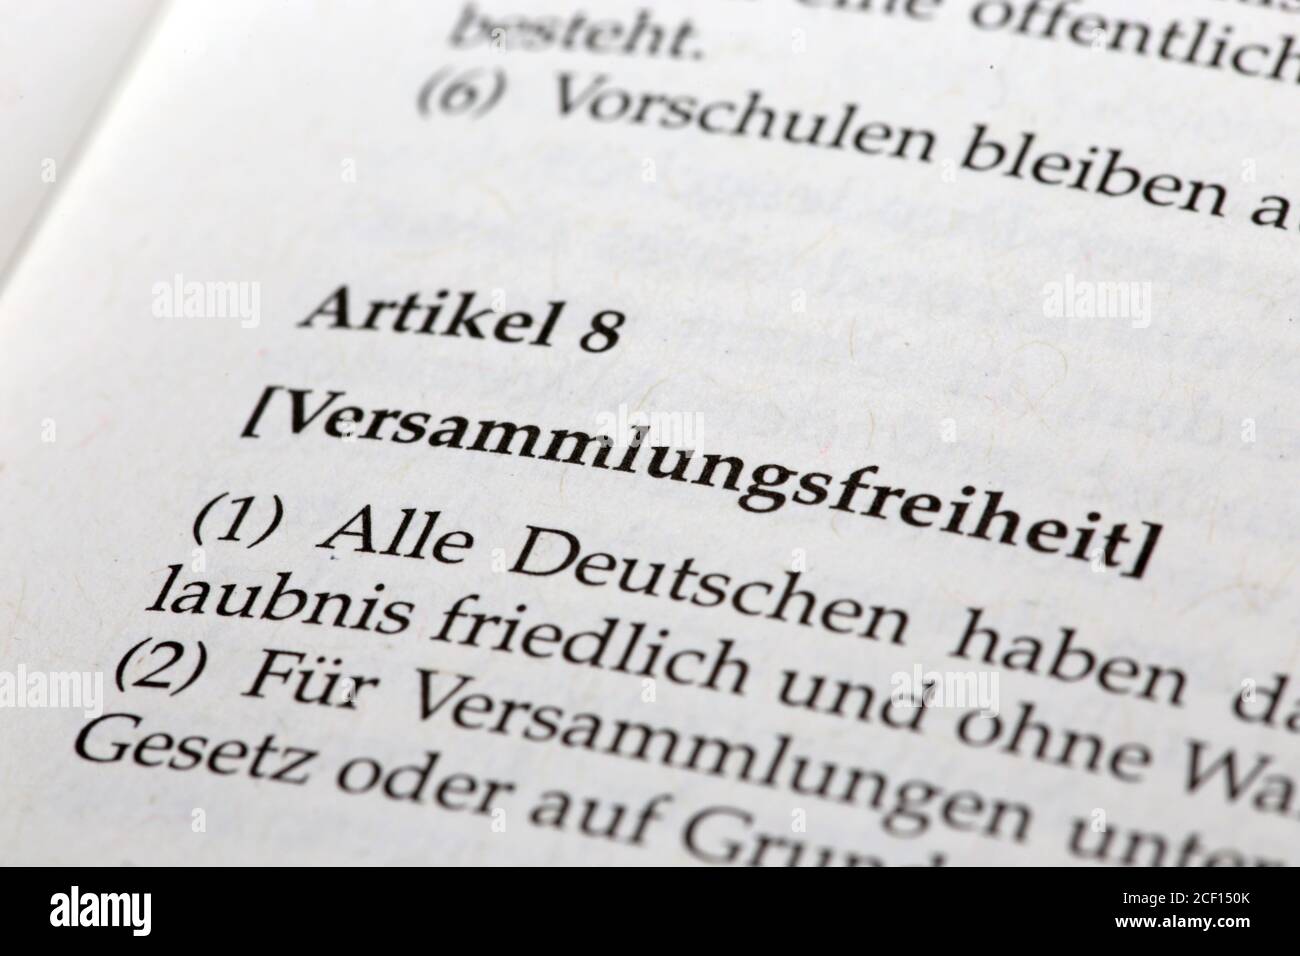 Ley básica Alemana Artículo 8, Libertad de reunión (Versammlungsfreiheit) Foto de stock